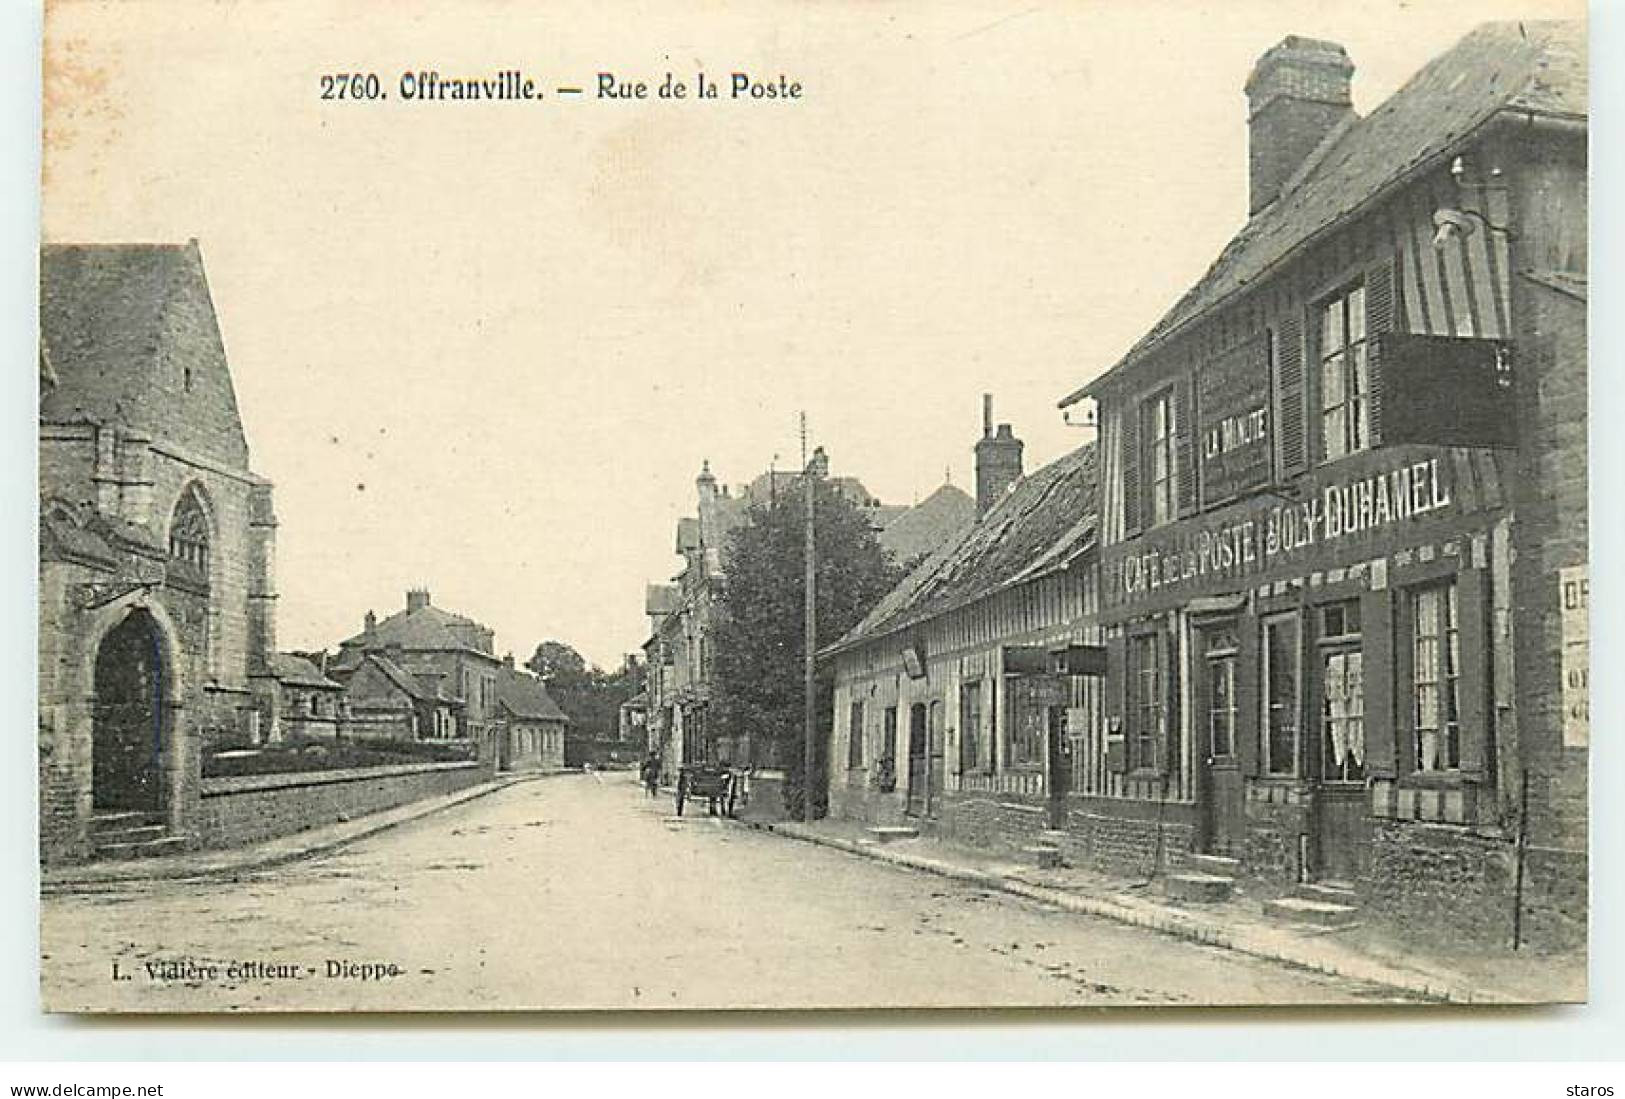 OFFRANVILLE - Rue De La Poste - Café De La Poste Joly Duhamel - Offranville